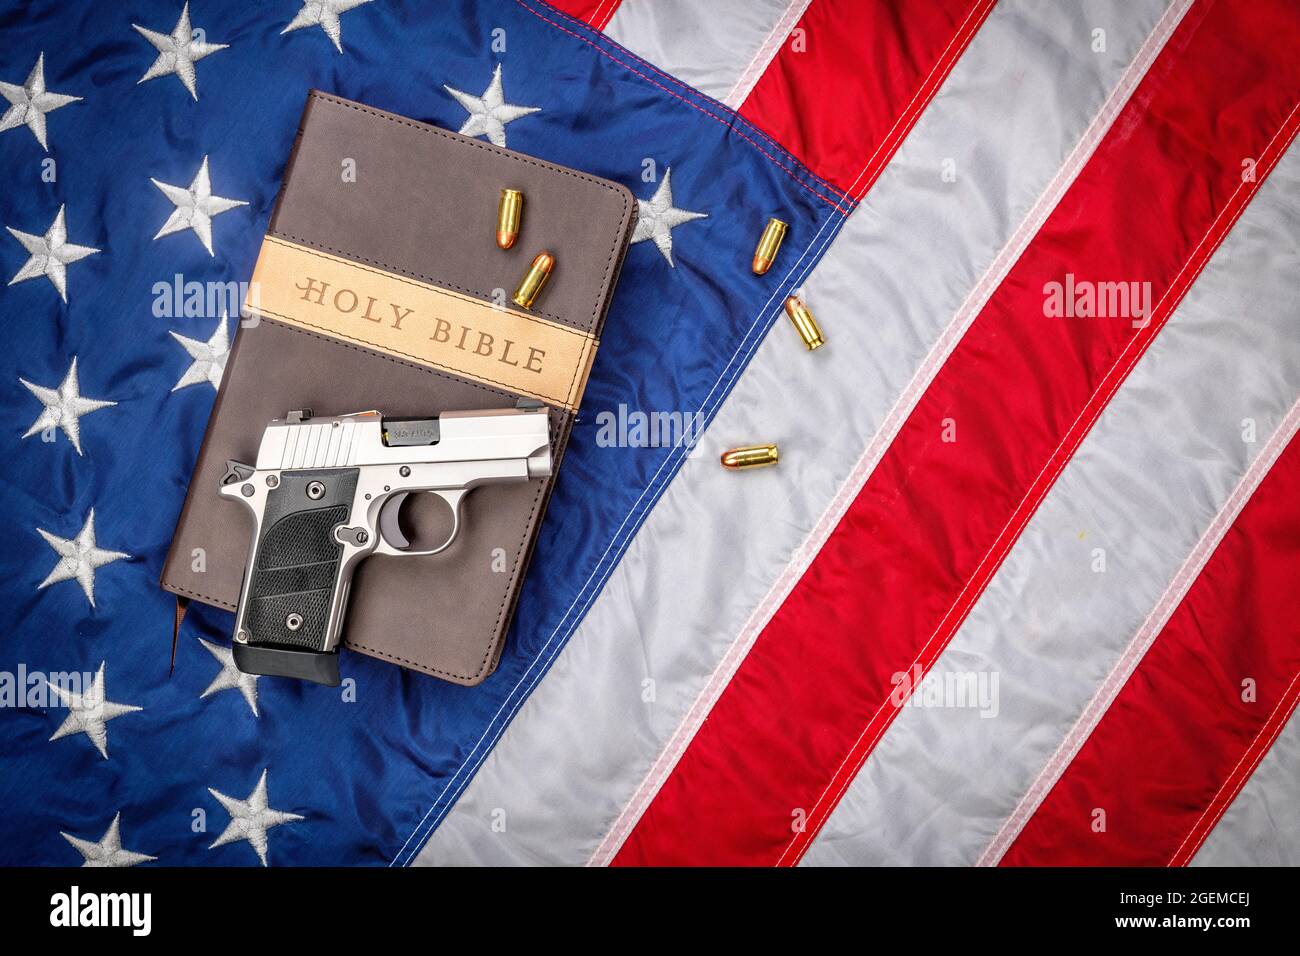 Eine Waffe und eine heilige bibel stehen auf einer amerikanischen Flagge, die Gott, Waffen und Religionsfreiheit repräsentiert. Stockfoto